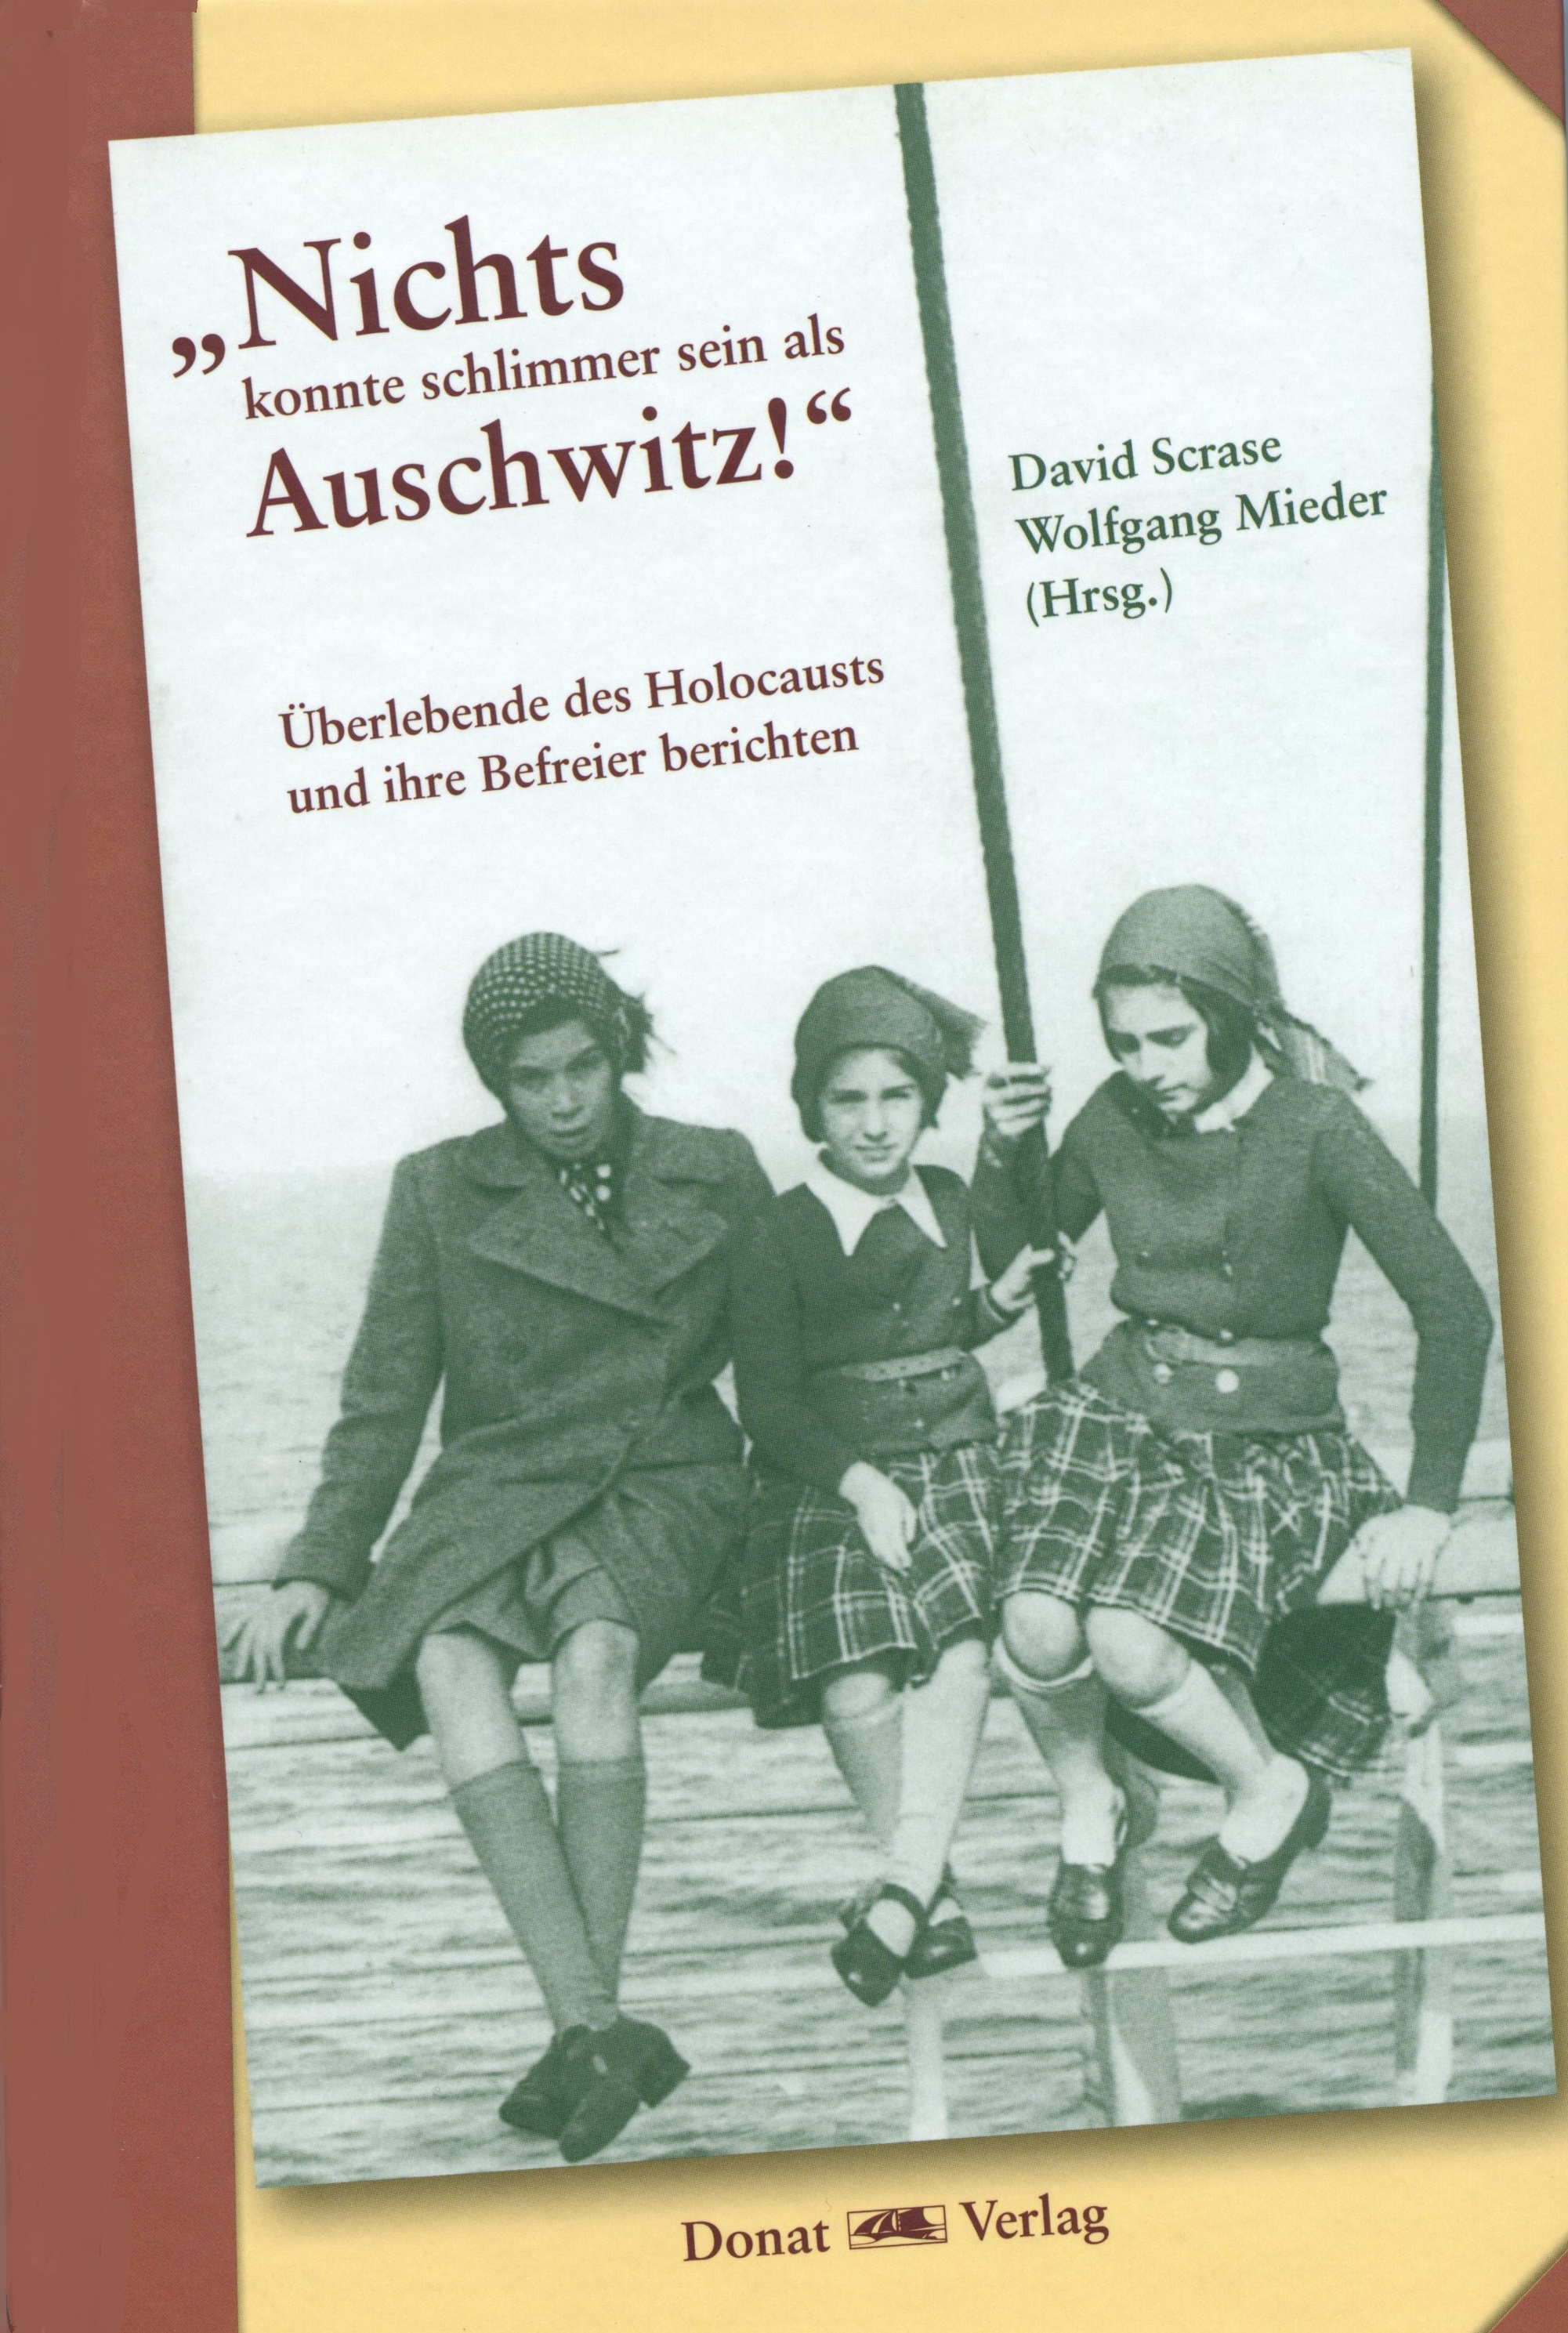 „Nichts konnte schlimmer sein als Auschwitz!“